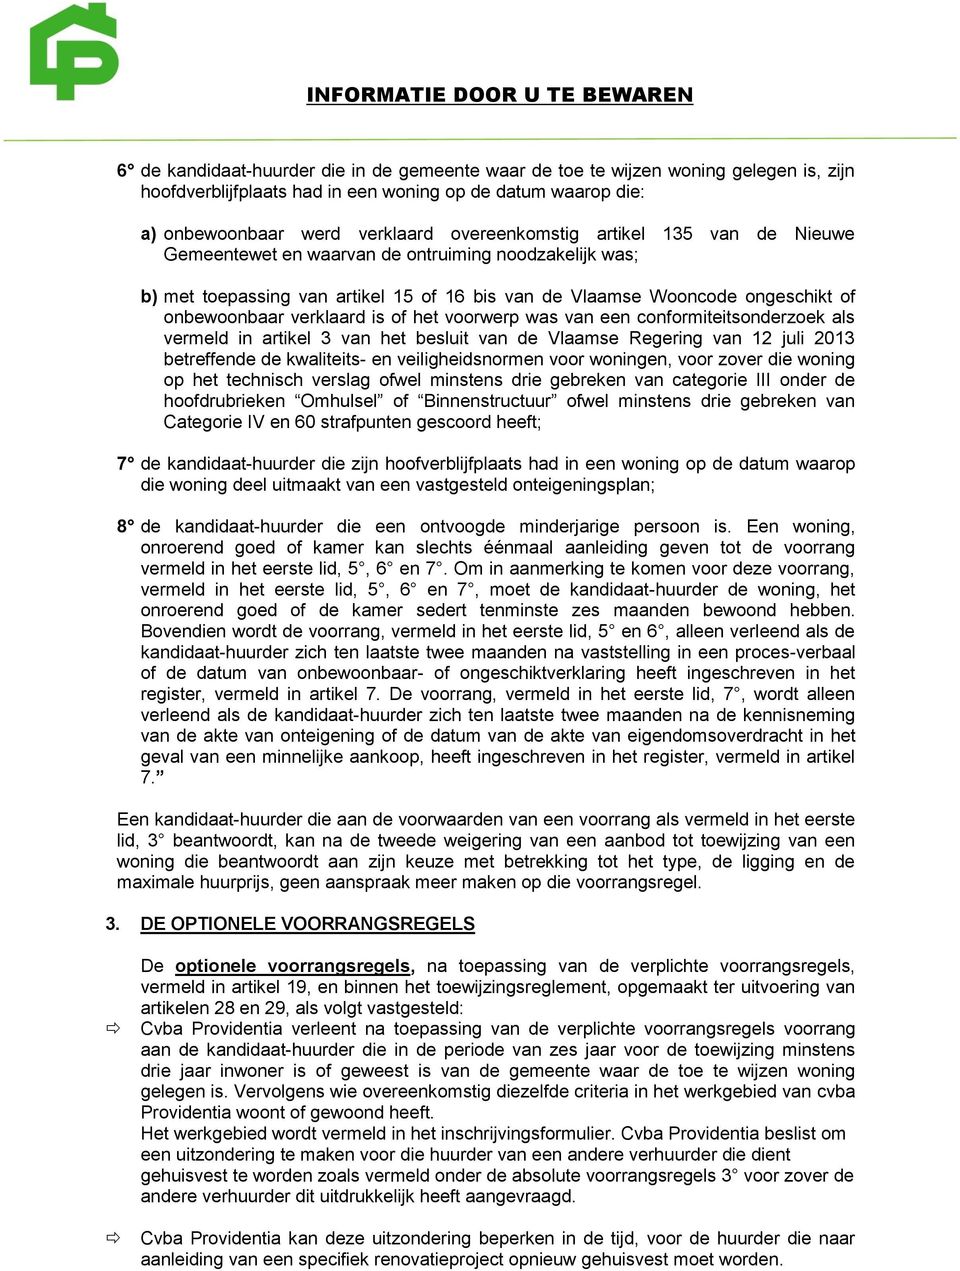 voorwerp was van een conformiteitsonderzoek als vermeld in artikel 3 van het besluit van de Vlaamse Regering van 12 juli 2013 betreffende de kwaliteits- en veiligheidsnormen voor woningen, voor zover